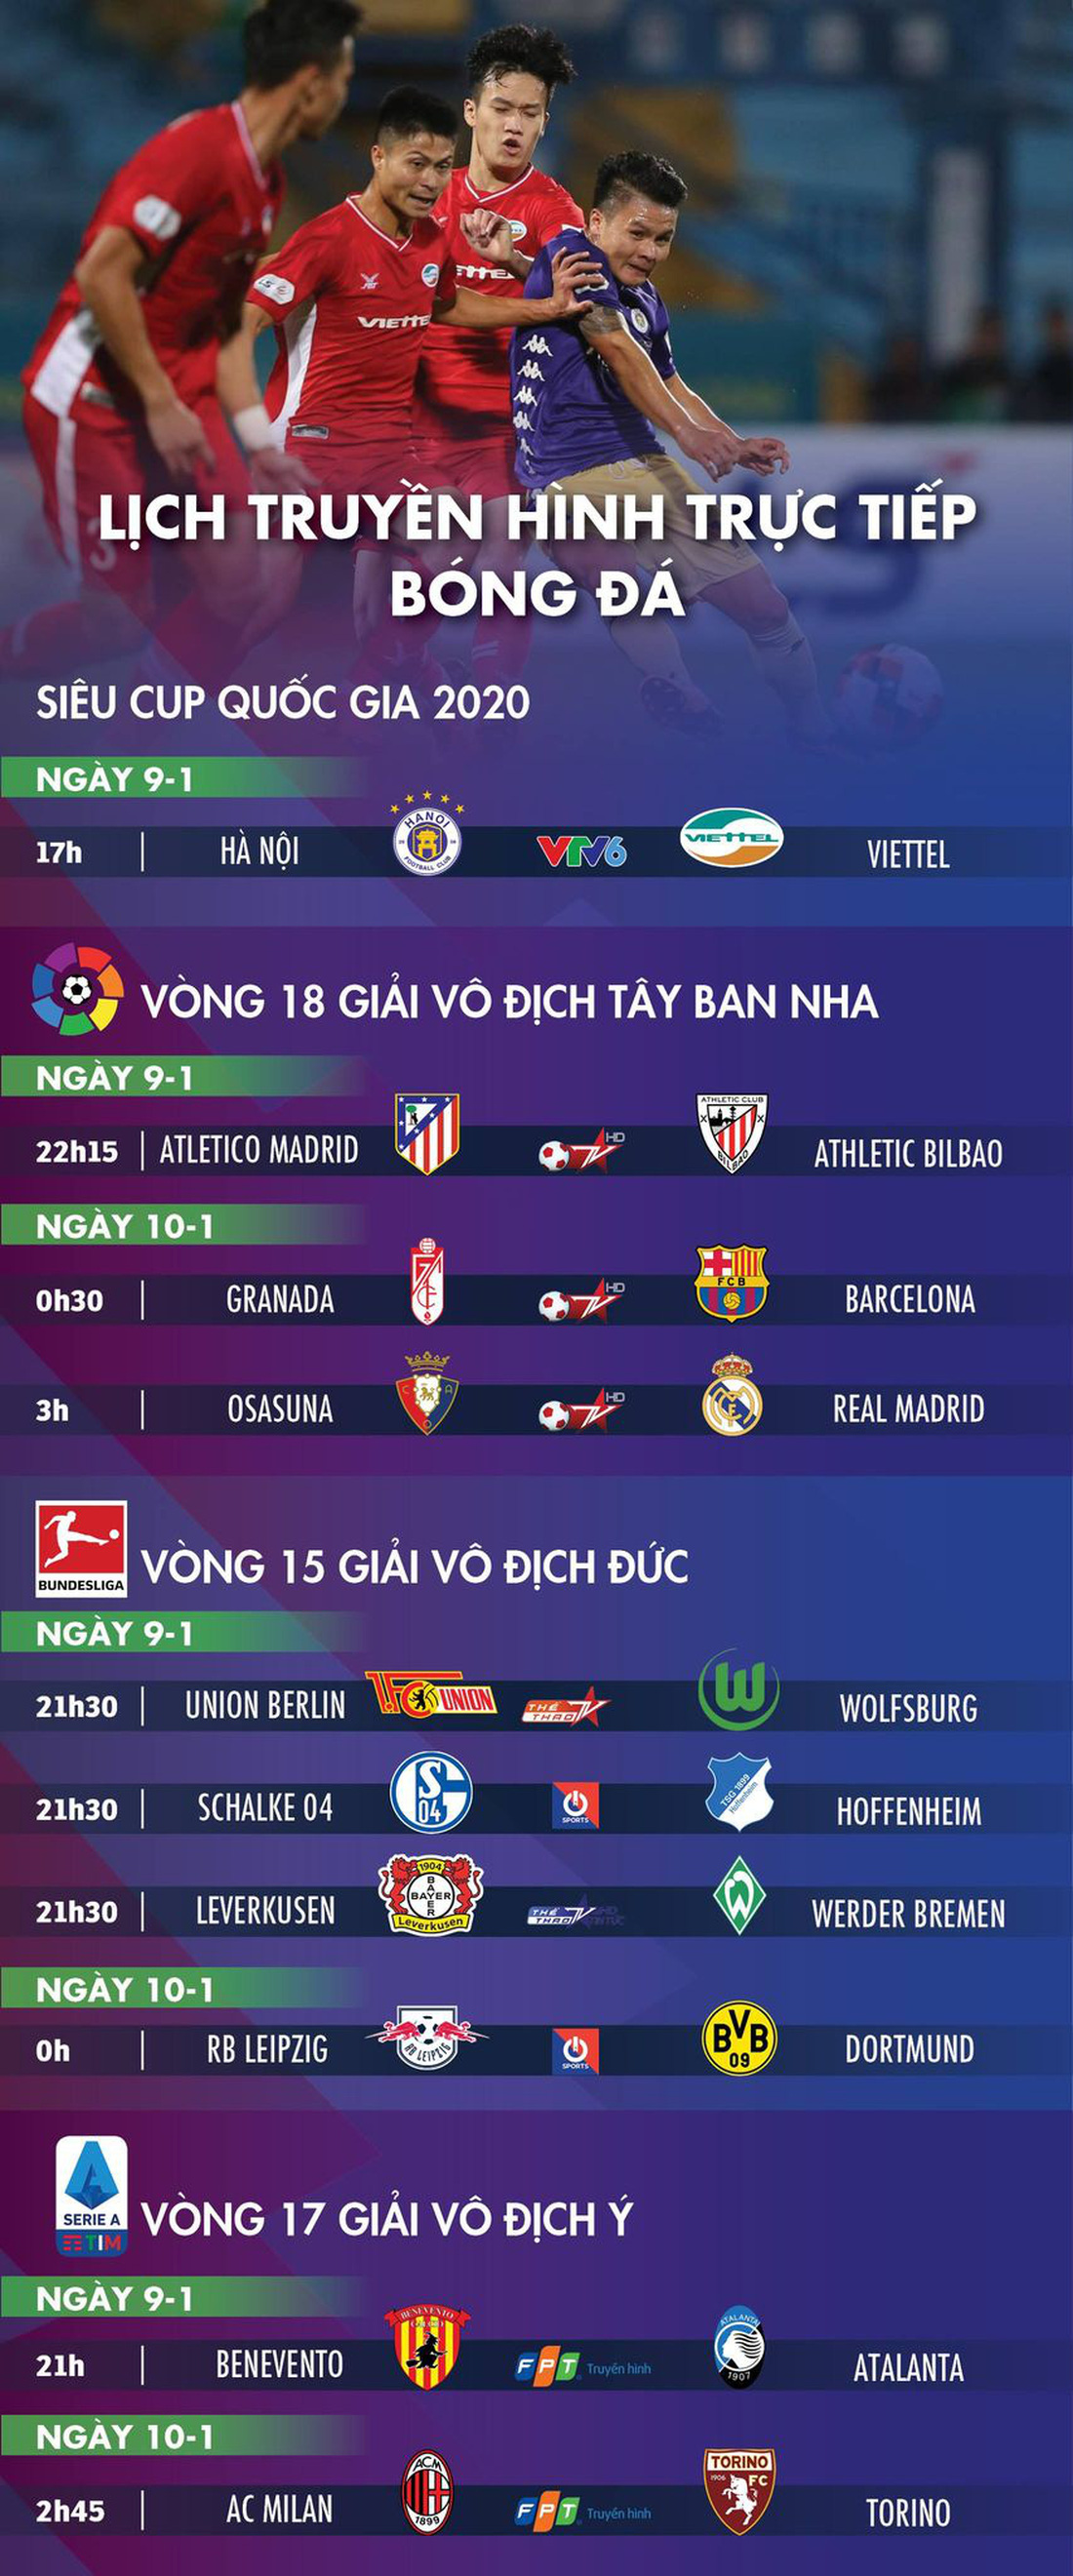 Lịch trực tiếp bóng đá ngày 9-1: CLB Hà Nội - Viettel, nhiều đại gia ra sân - Ảnh 1.